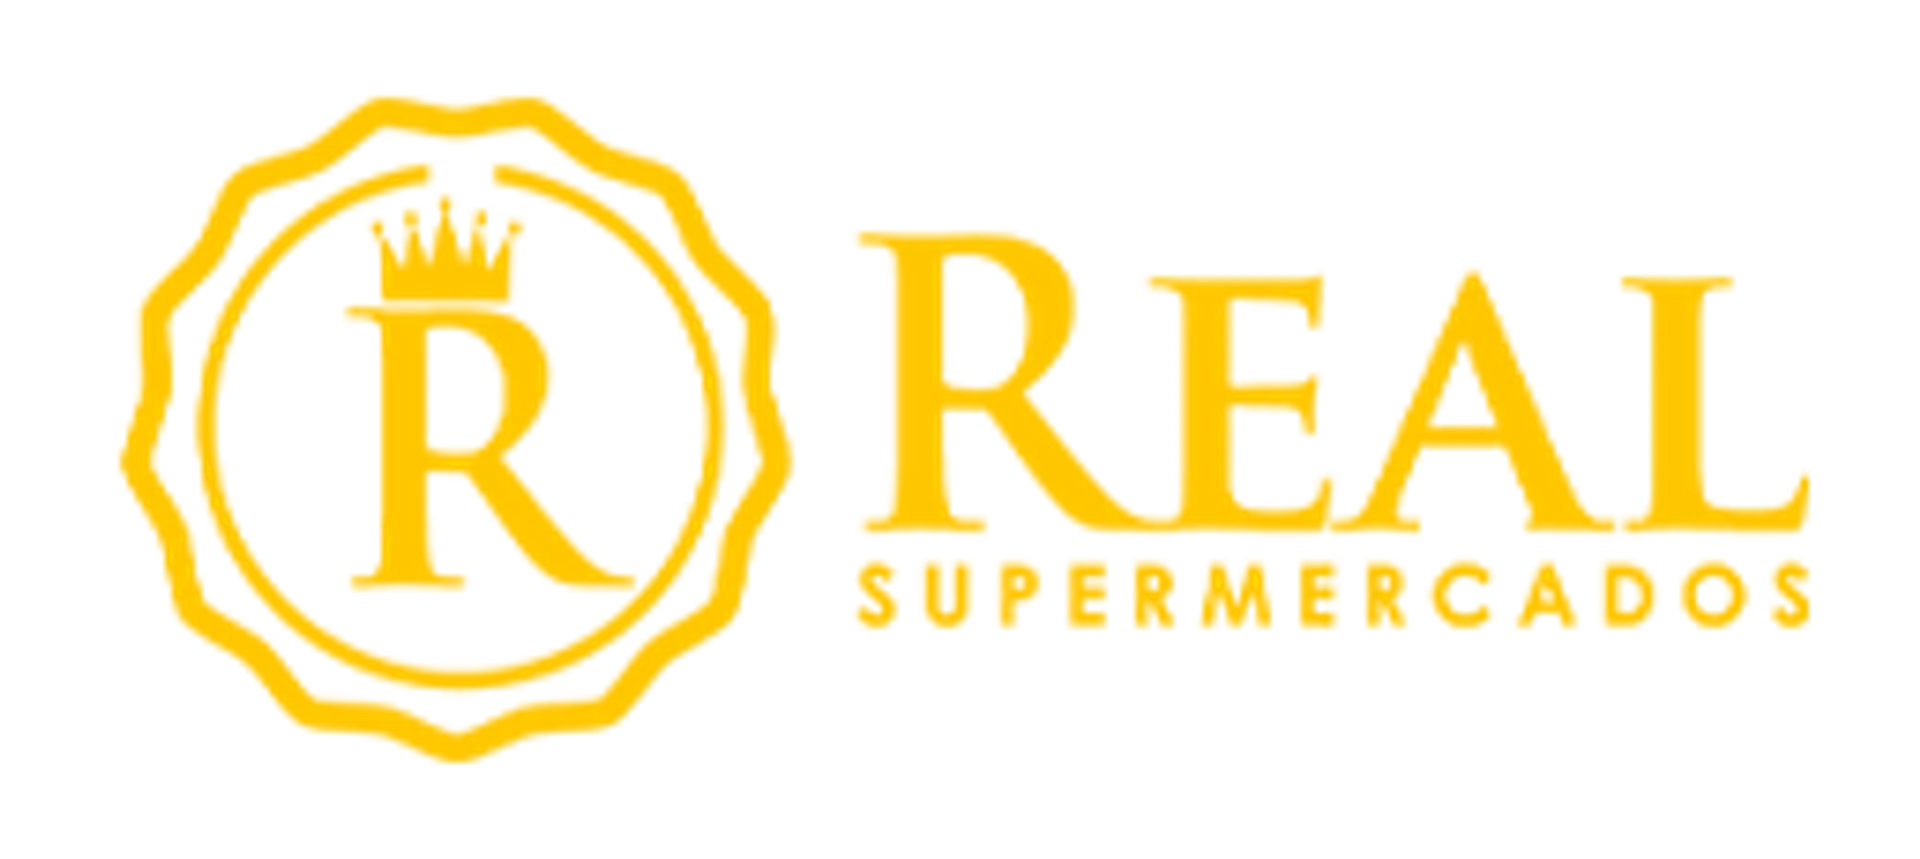 SUPERMERCADOS REAL logo